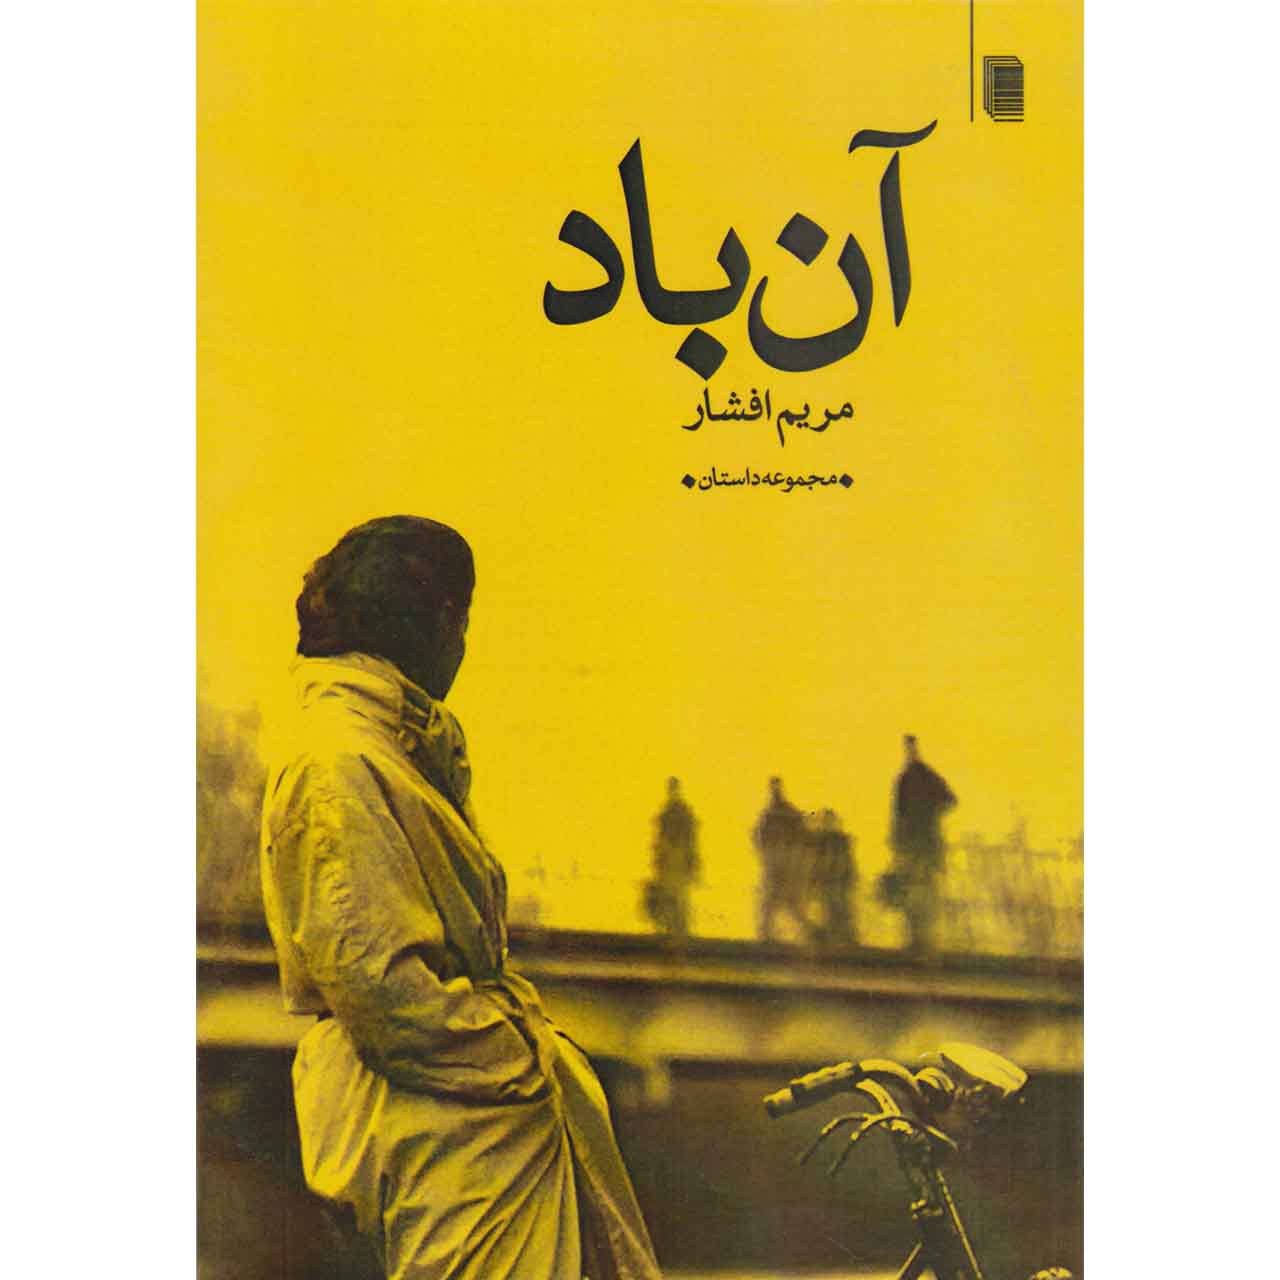 کتاب آن باد اثر مریم افشار انتشارات روشنگران و مطالعات زنان